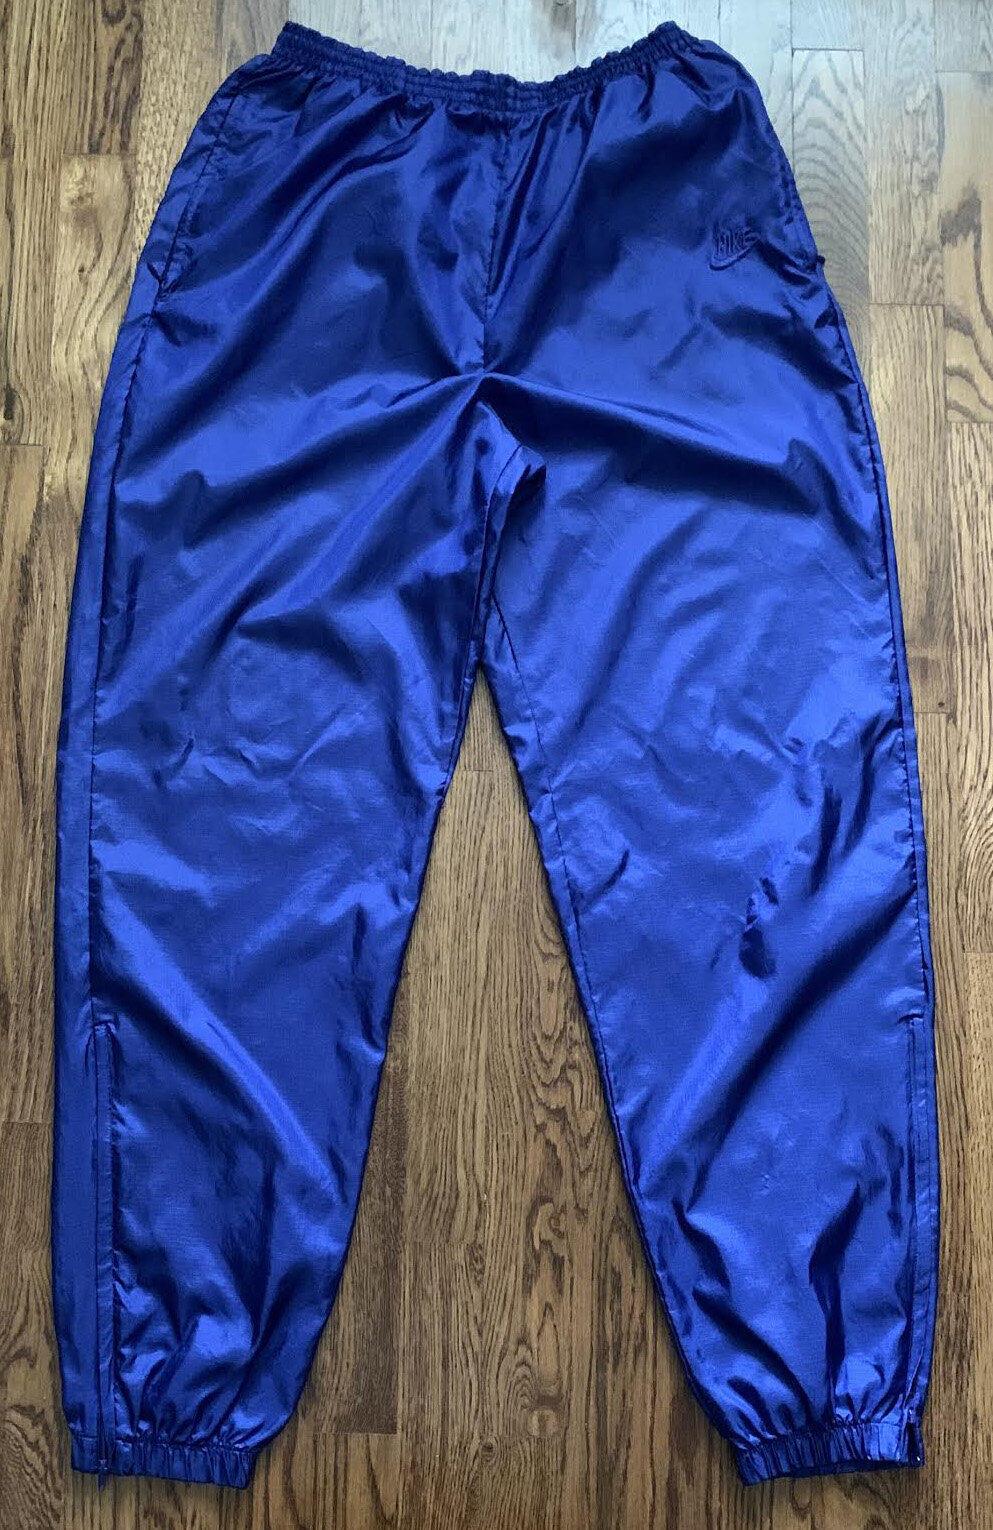 blue nike windbreaker pants